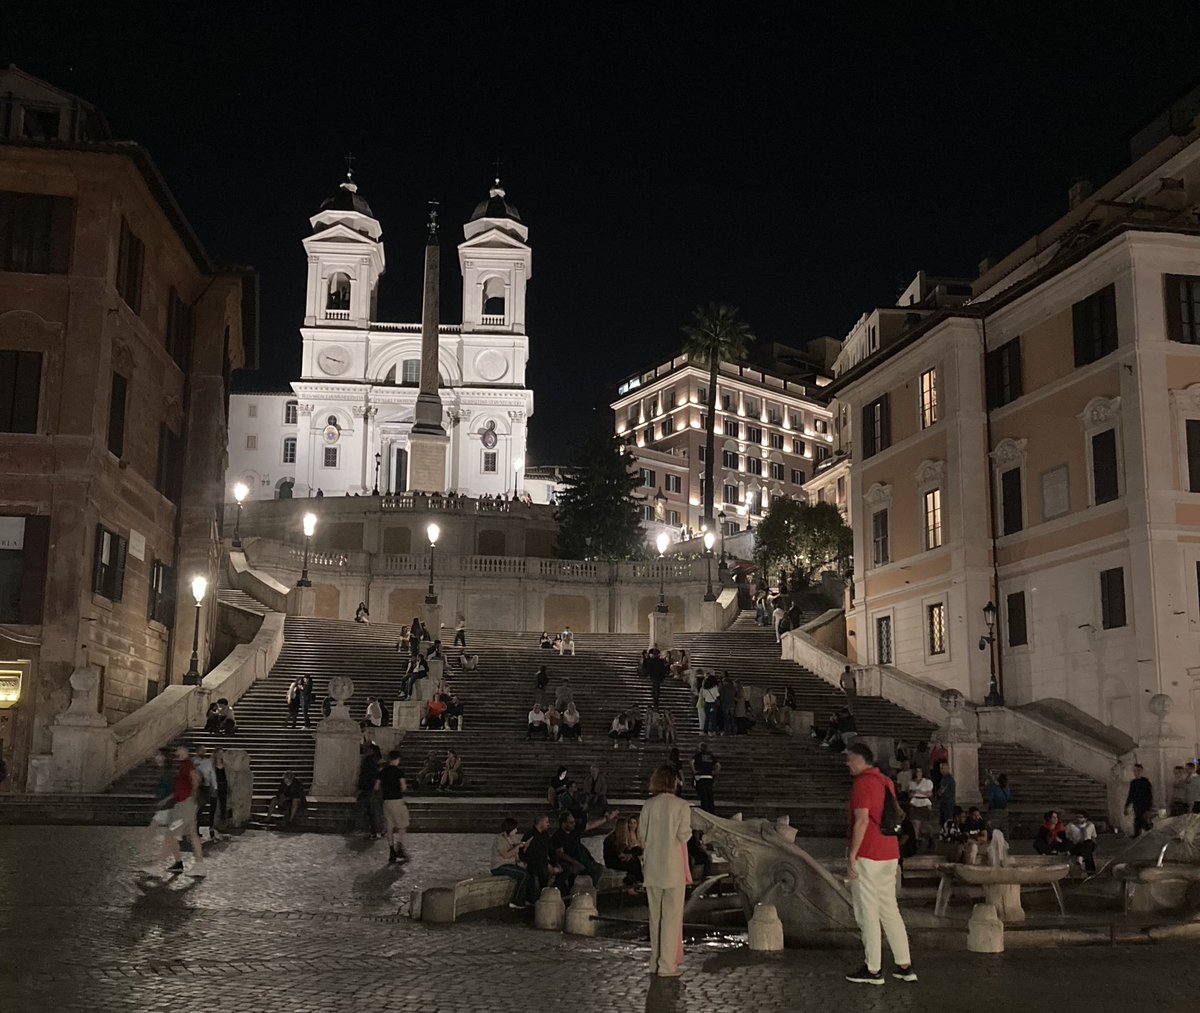 Buon proseguimento di serata e buonanotte ⭐️❤️🌝 da qui #Roma #PiazzadiSpagna #TrinitàdeiMonti